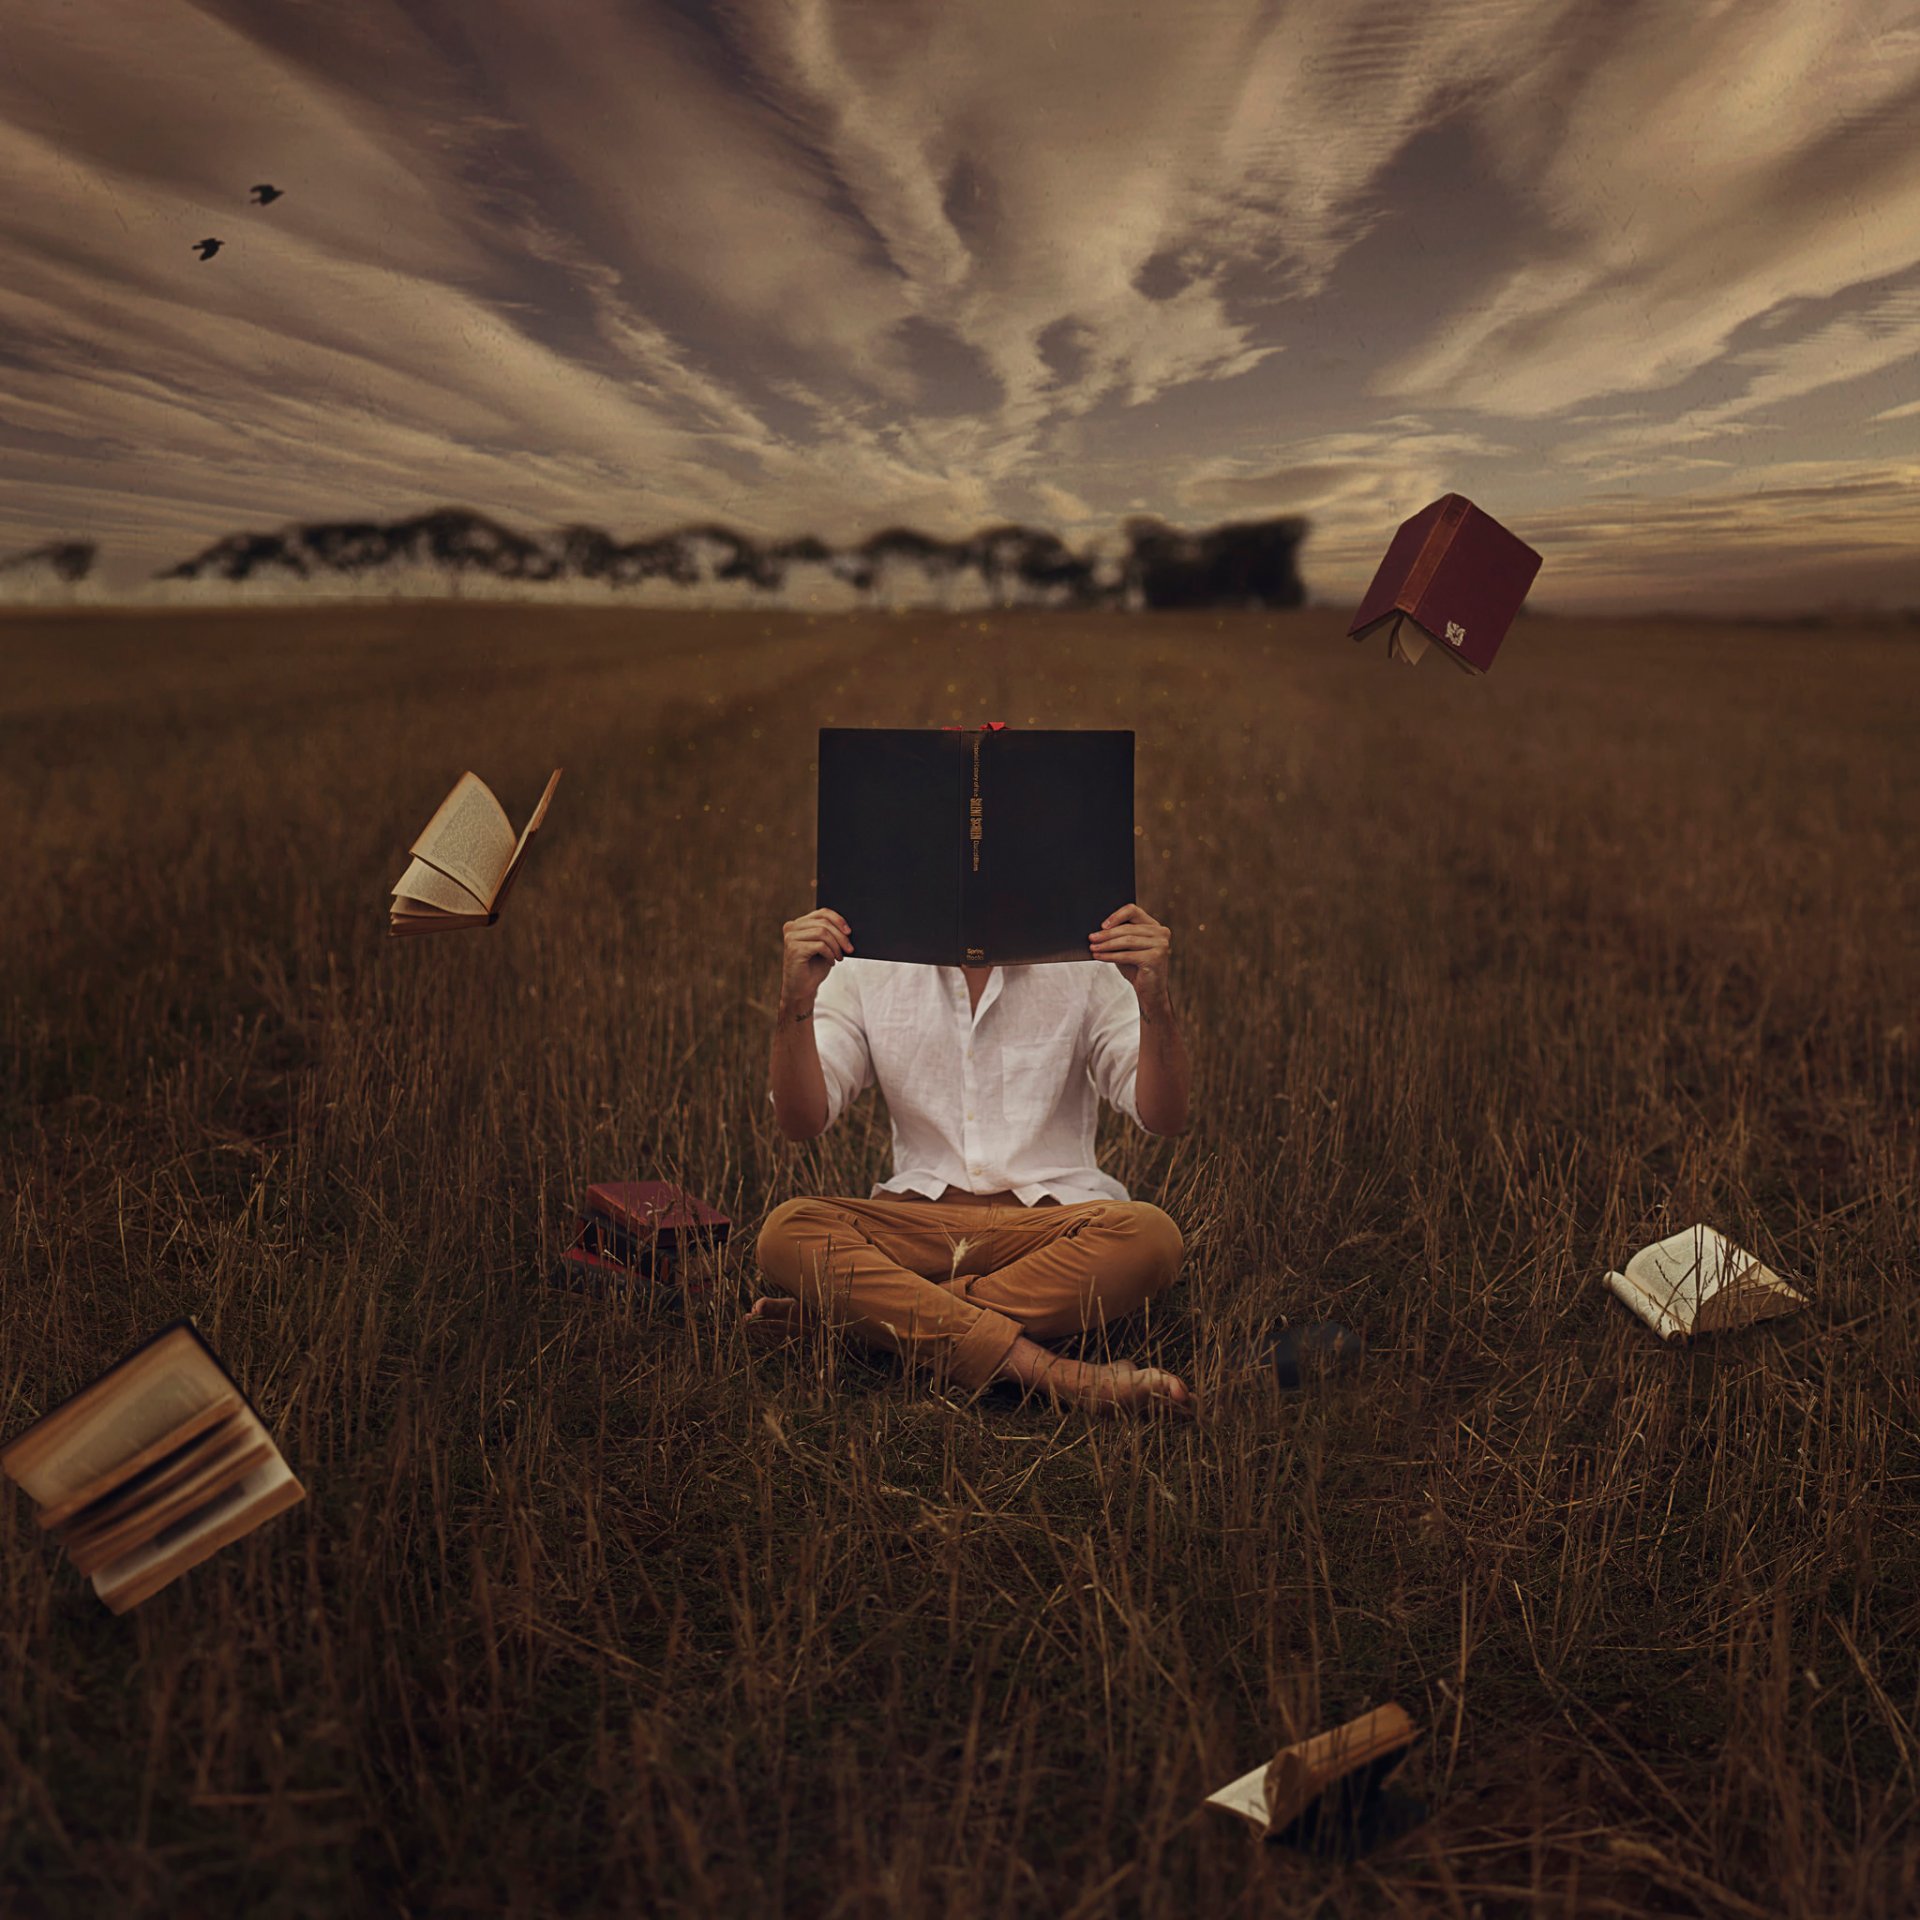 Размышления над проблемами. Книга человек. Сюрреализм. Фотосессия с книжкой в поле. Чтение в одиночестве.